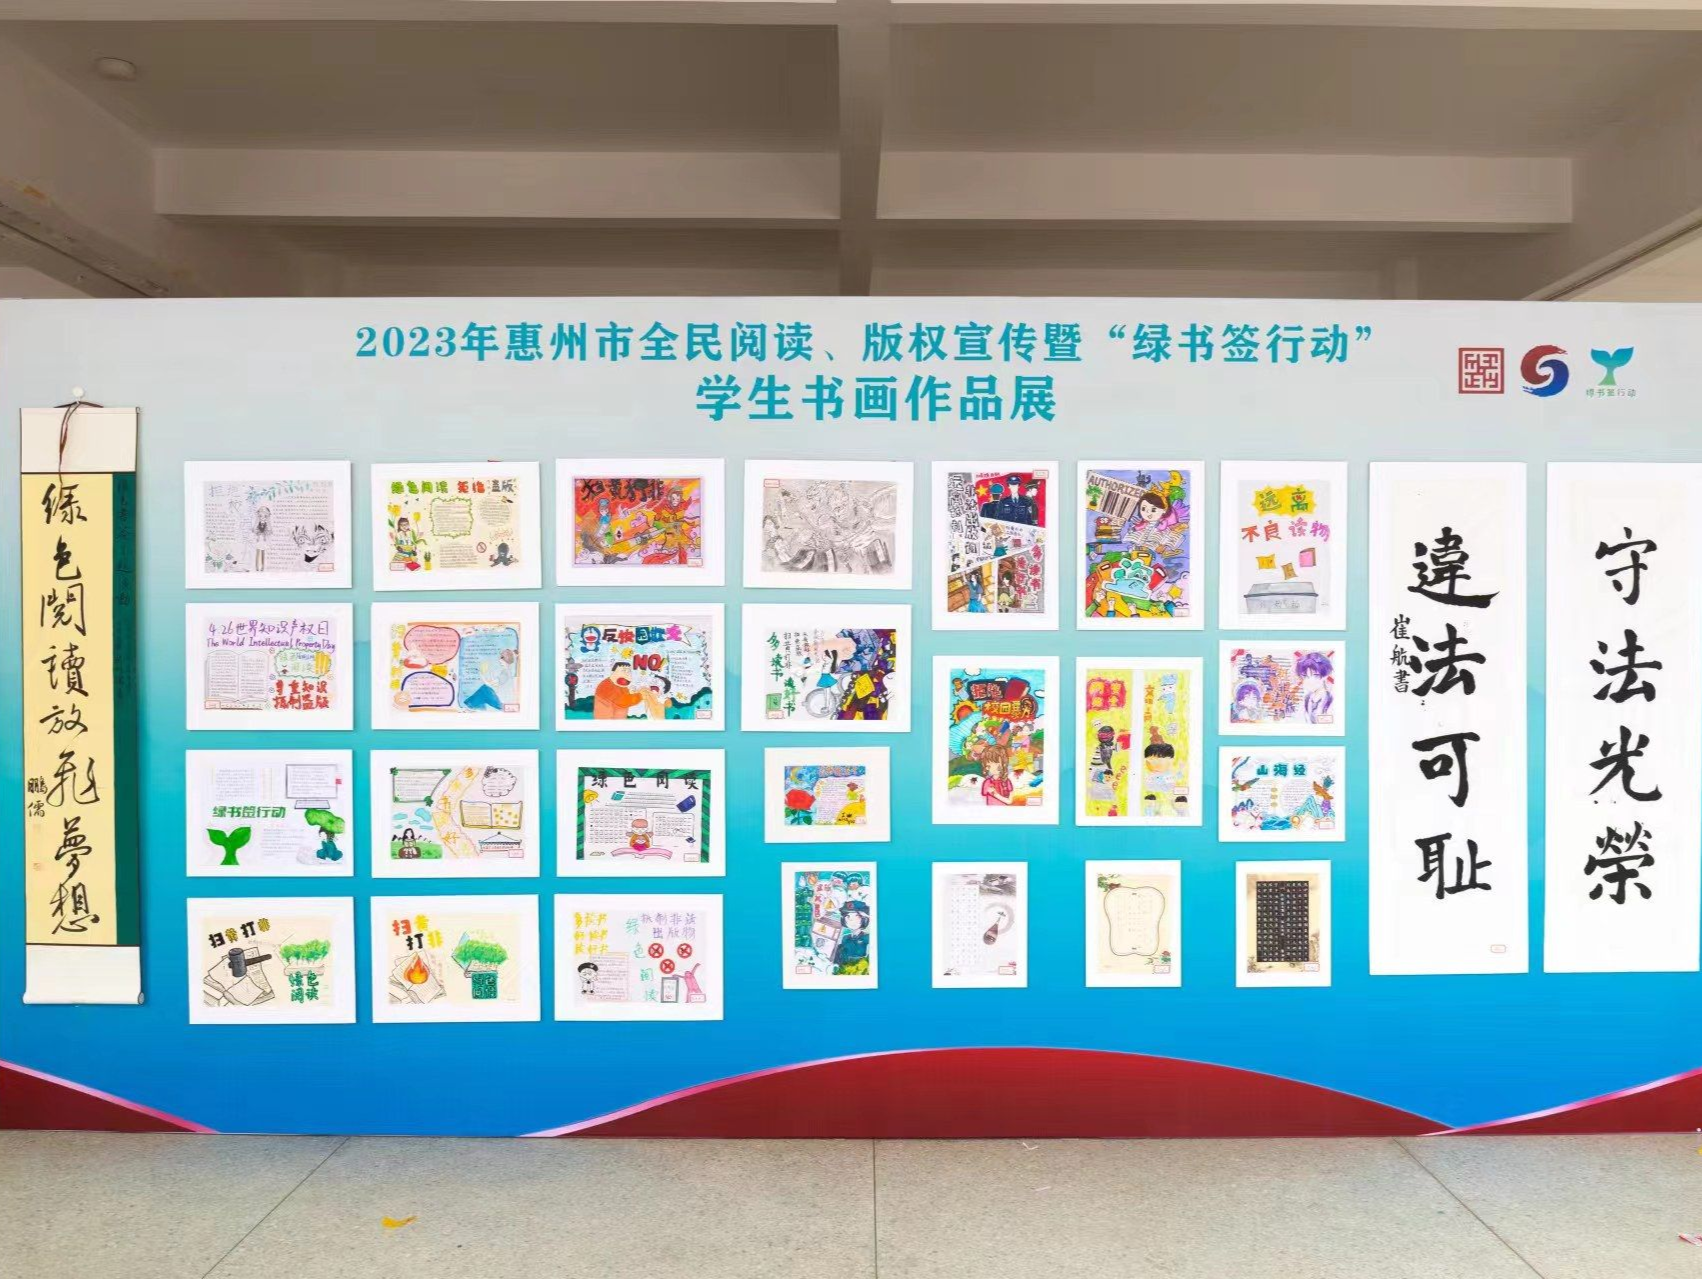 惠州2023全民阅读、版权宣传暨“绿书签行动”启动